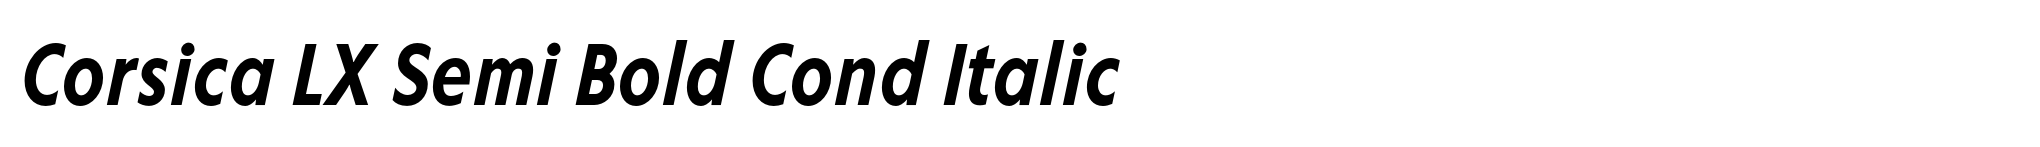 Corsica LX Semi Bold Cond Italic image